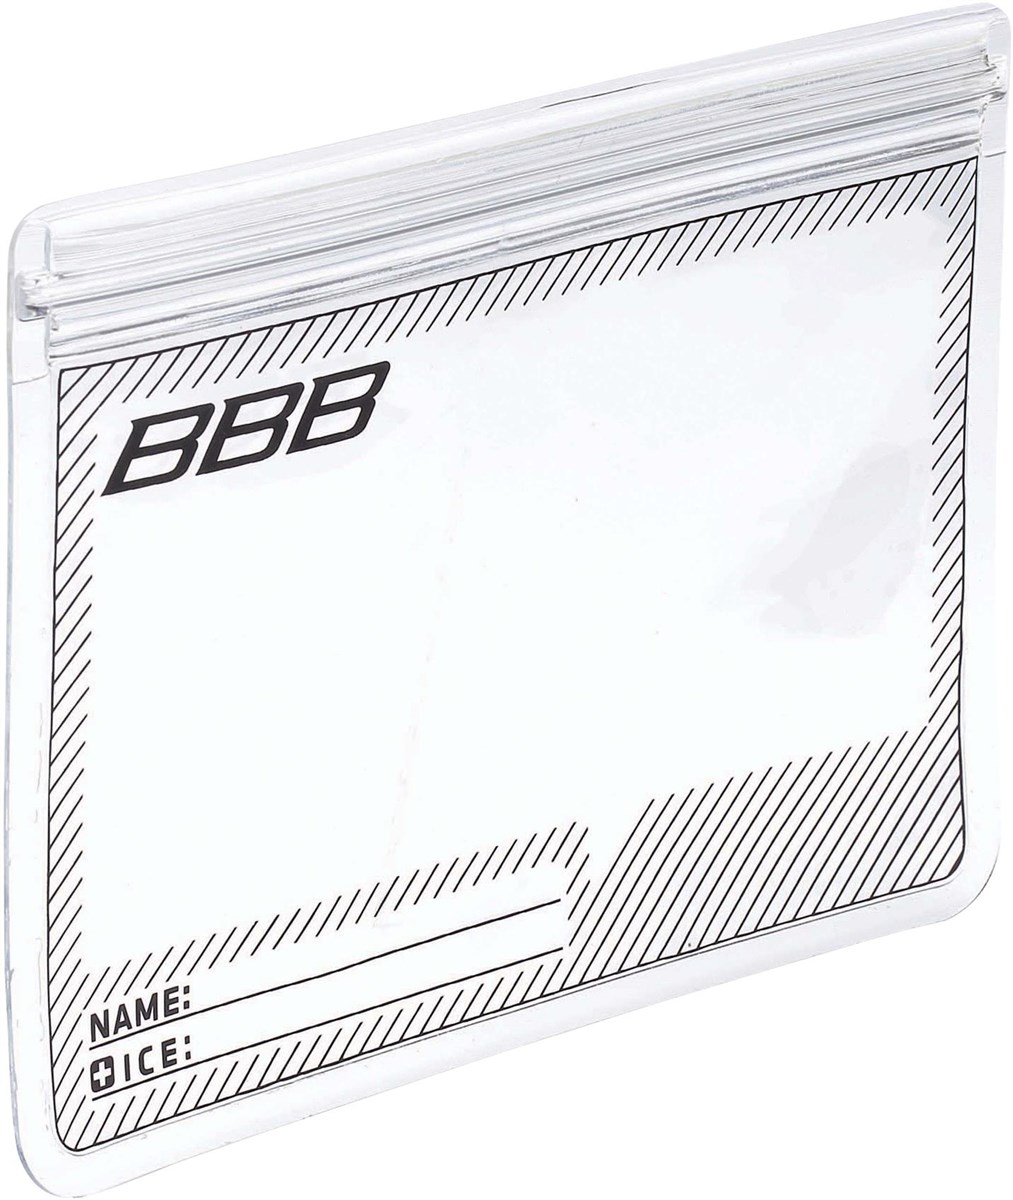 BBB SmartSleeve Smart Phone Bag product image